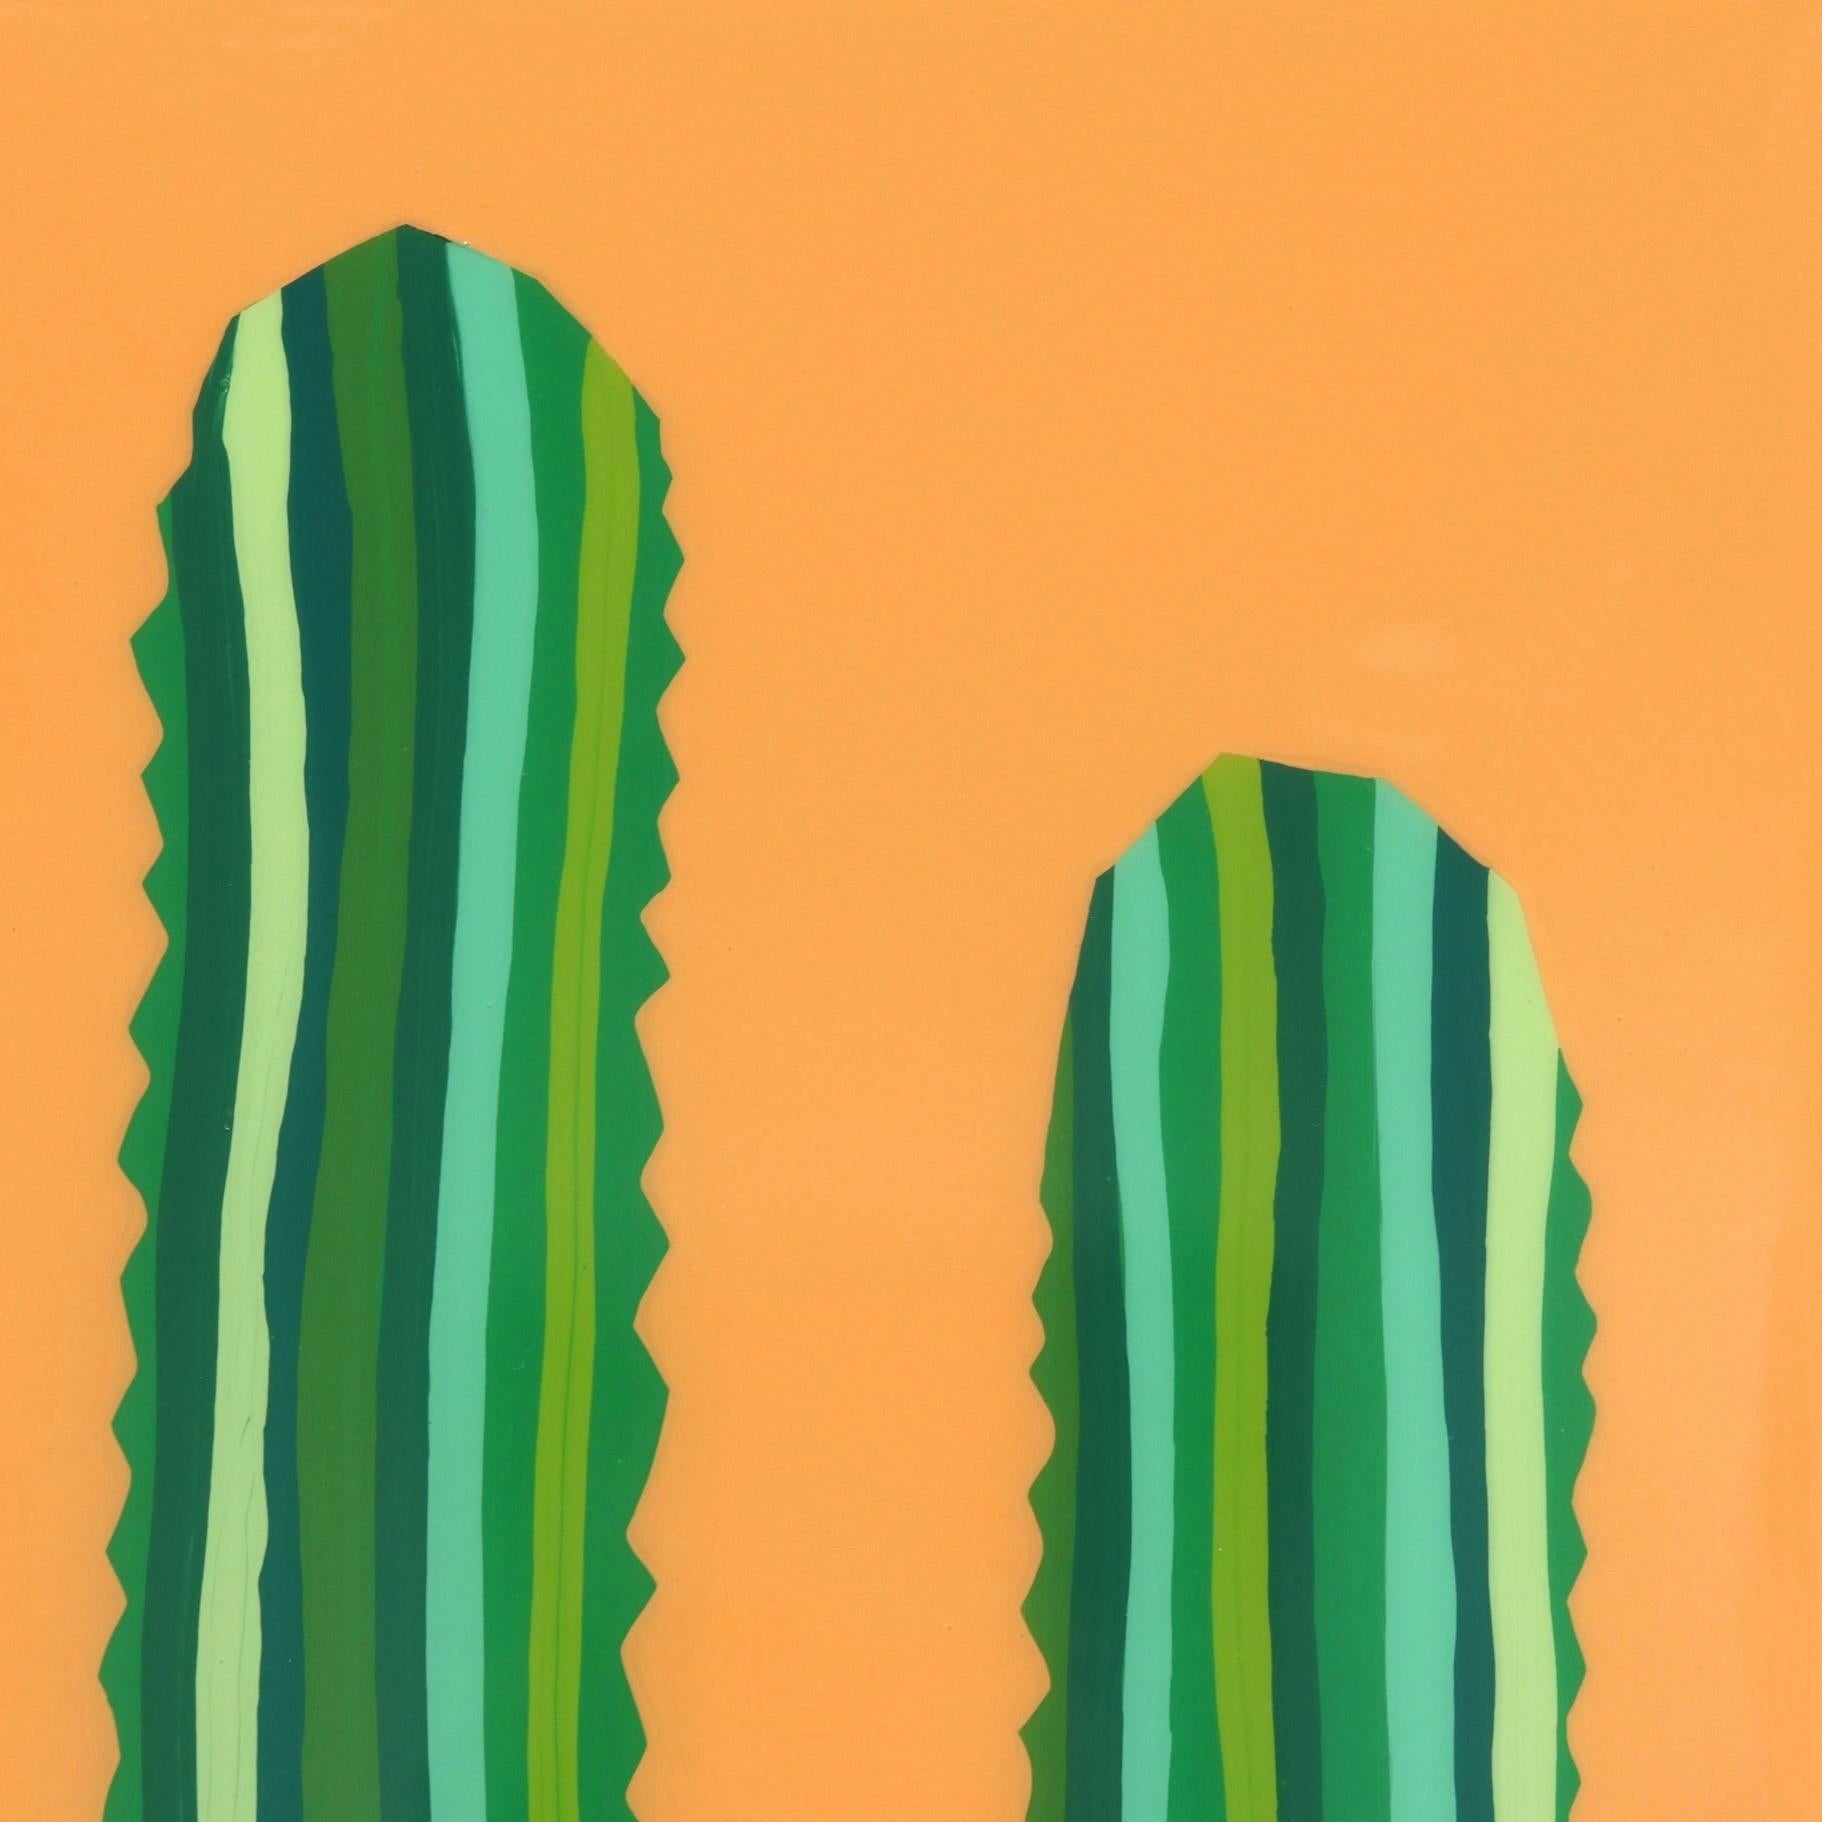 Will Beger verfolgt mit seinen zeitgenössisch-minimalistischen Gemälden einen ganz eigenen Ansatz in der Kunst des Südwestens. Beeinflusst von seiner Jugend und inspiriert von der Natur, fängt er mühelos eine lebendige, bohèmehafte Ästhetik ein, die